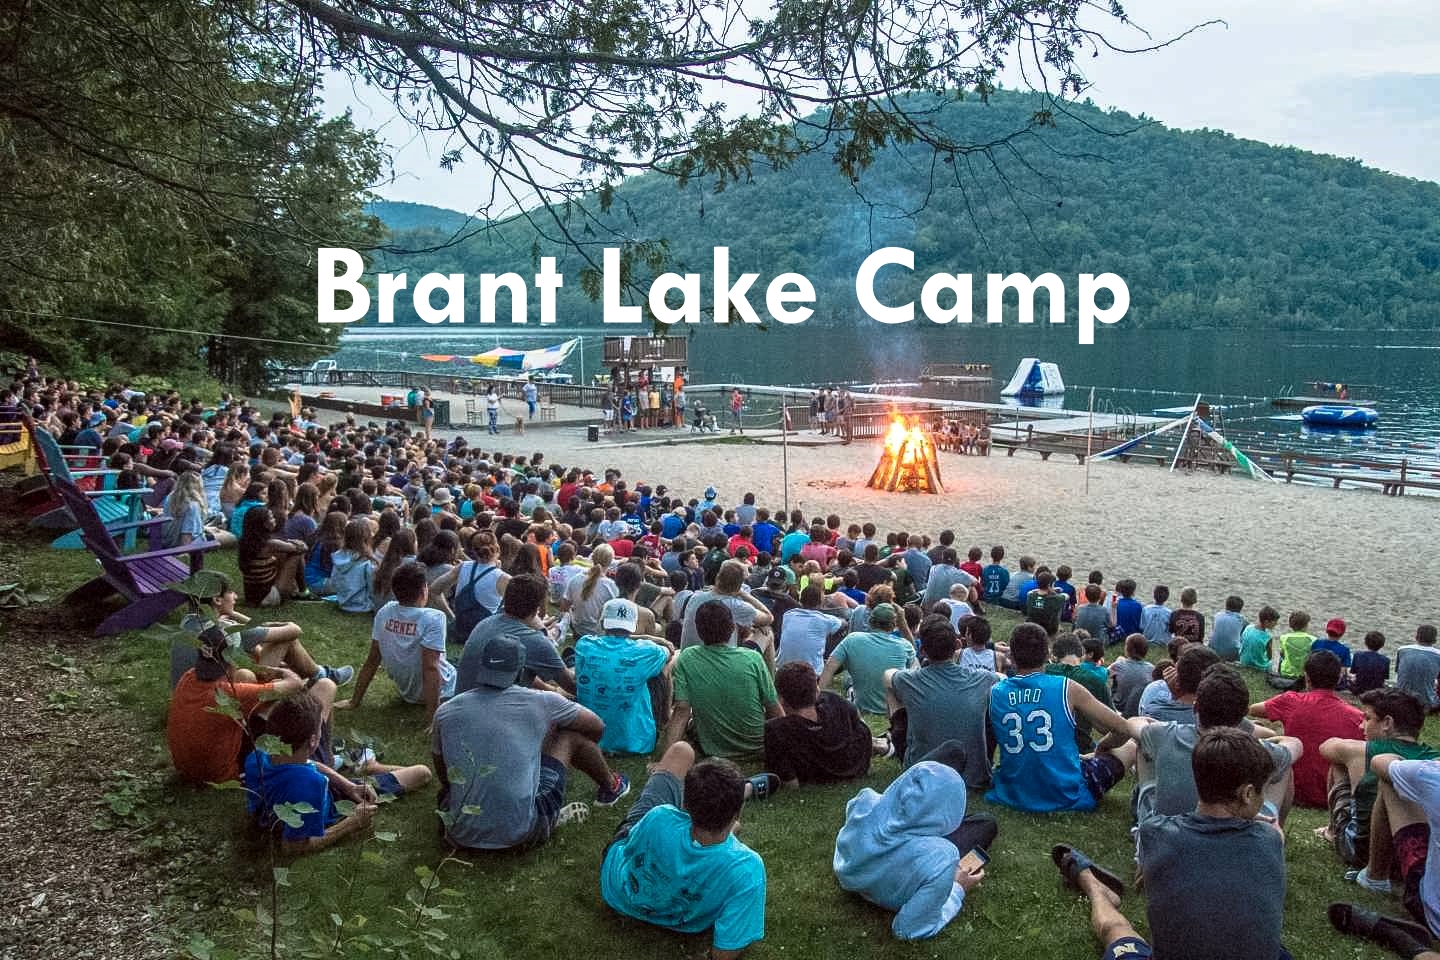 Brant Lake Camp